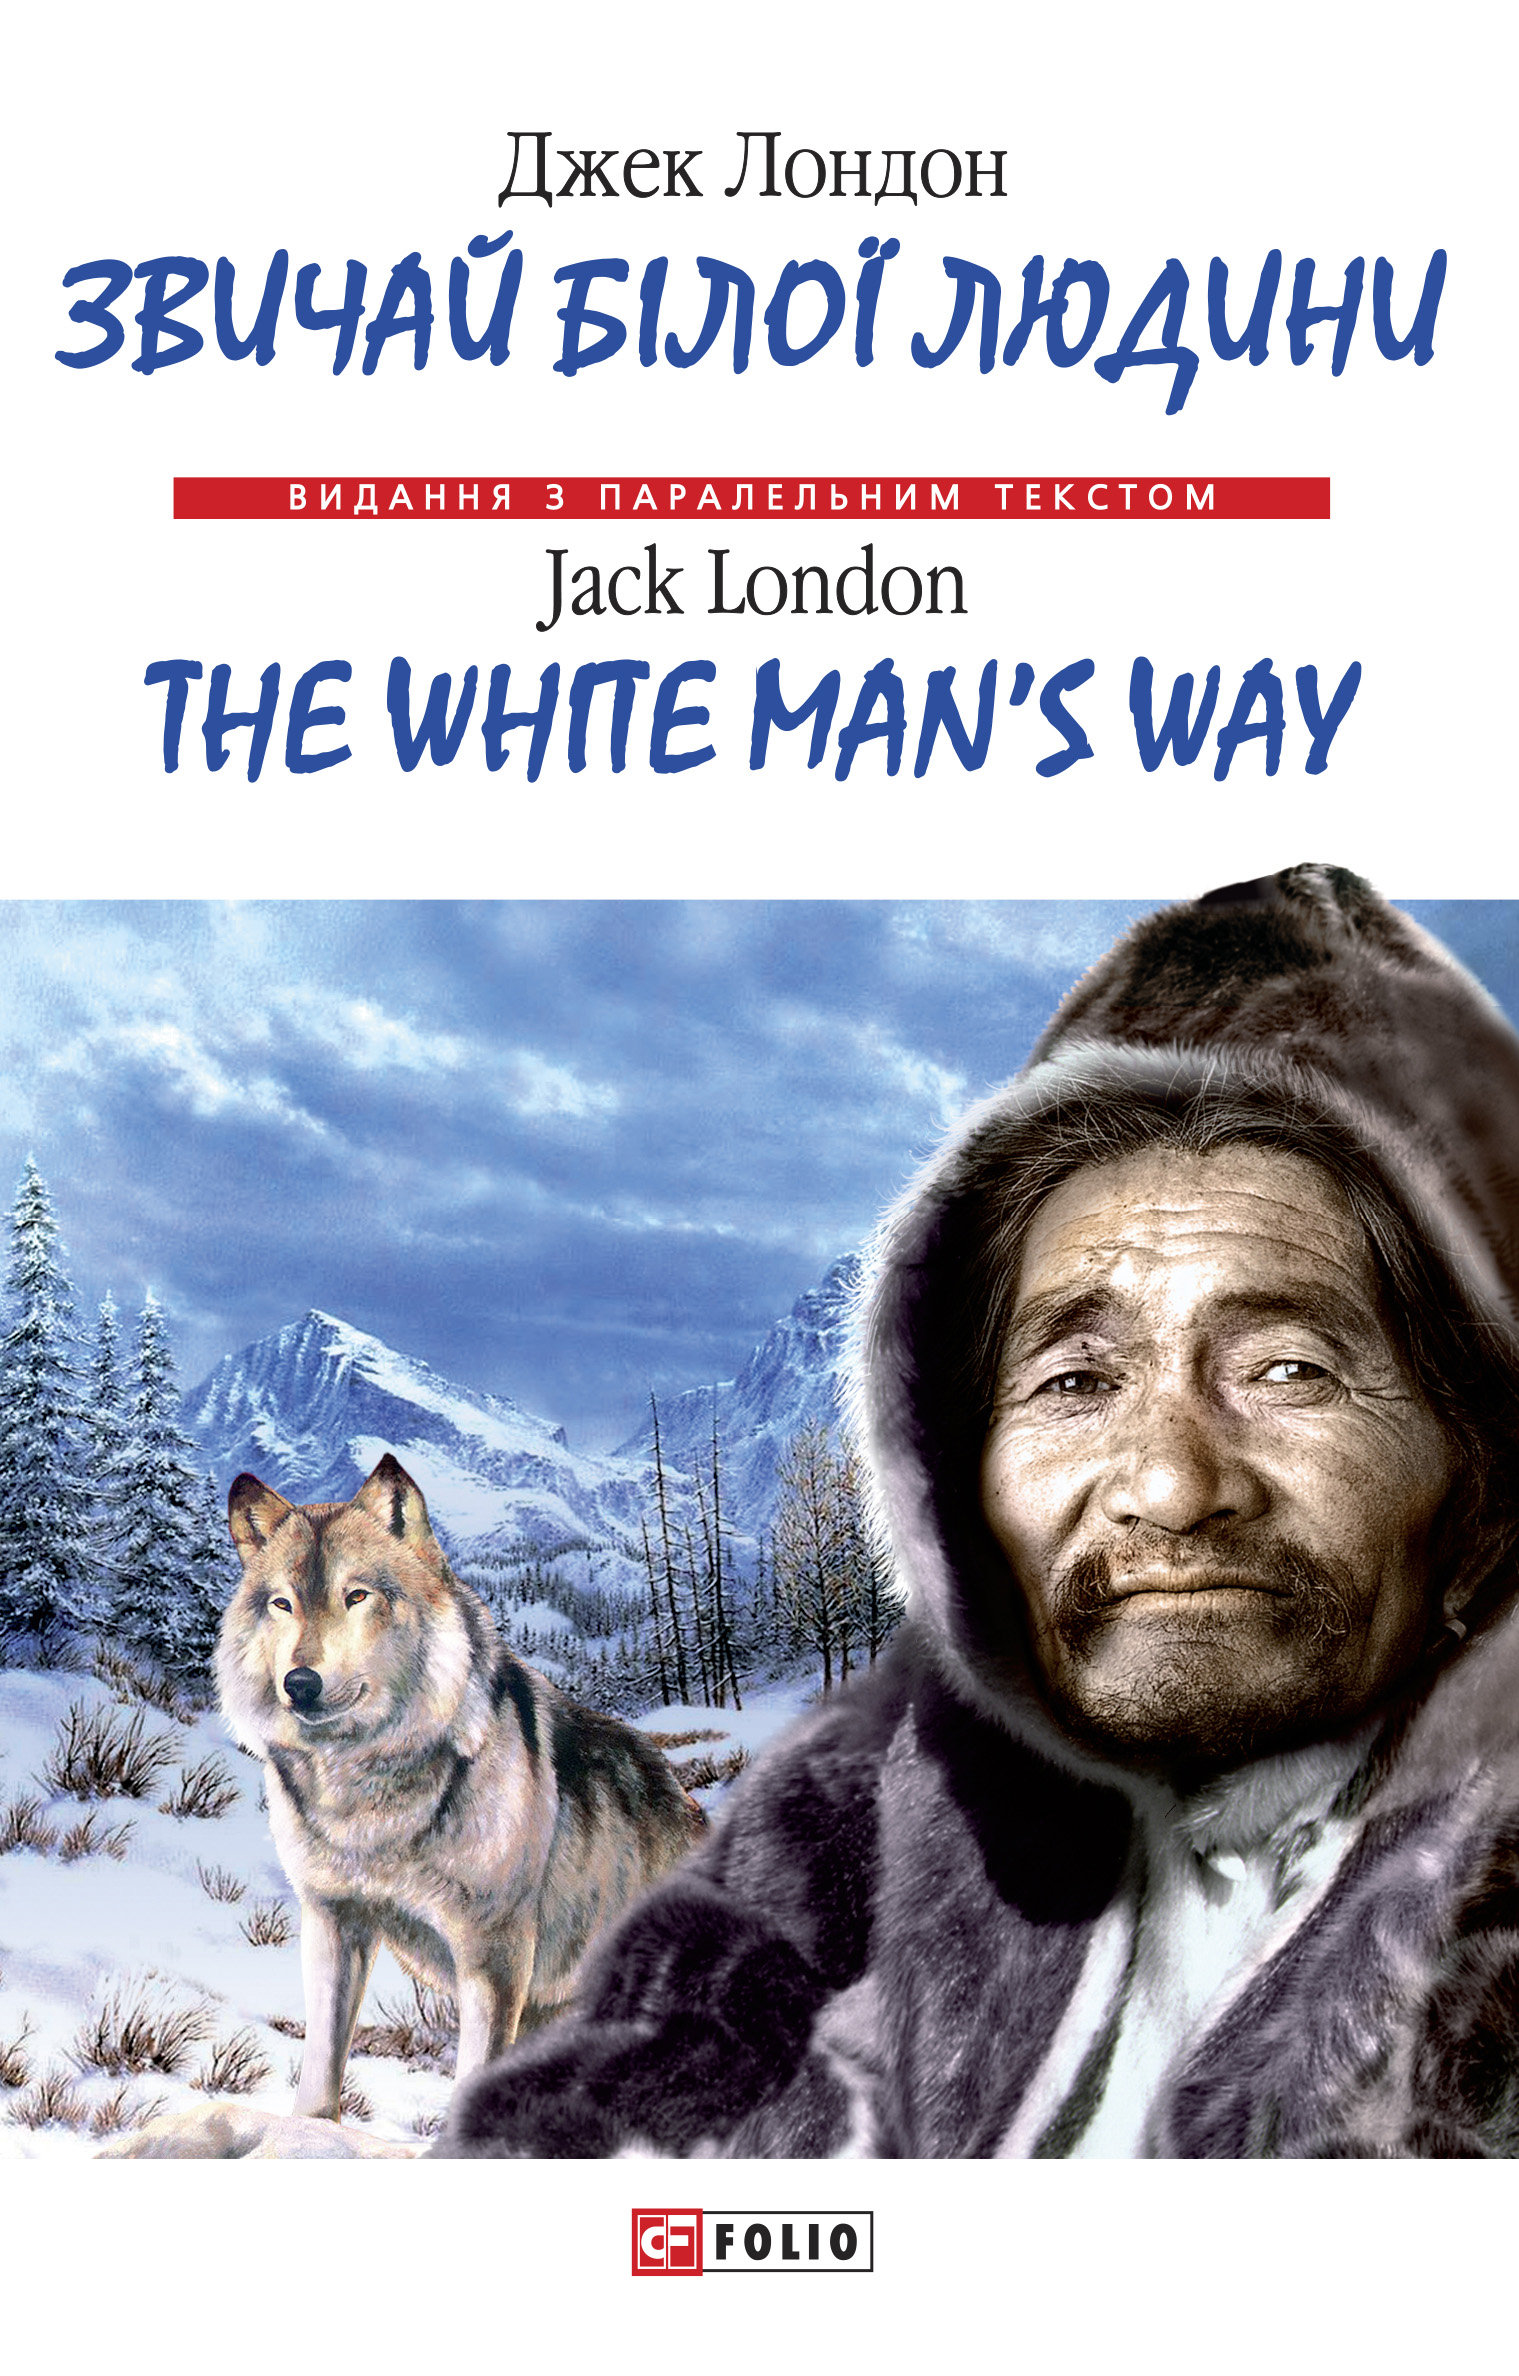 Книга Звичай бiлої людини = The White Man's Way из серии , созданная Jack London, может относится к жанру Литература 20 века. Стоимость электронной книги Звичай бiлої людини = The White Man's Way с идентификатором 45163920 составляет 66.00 руб.